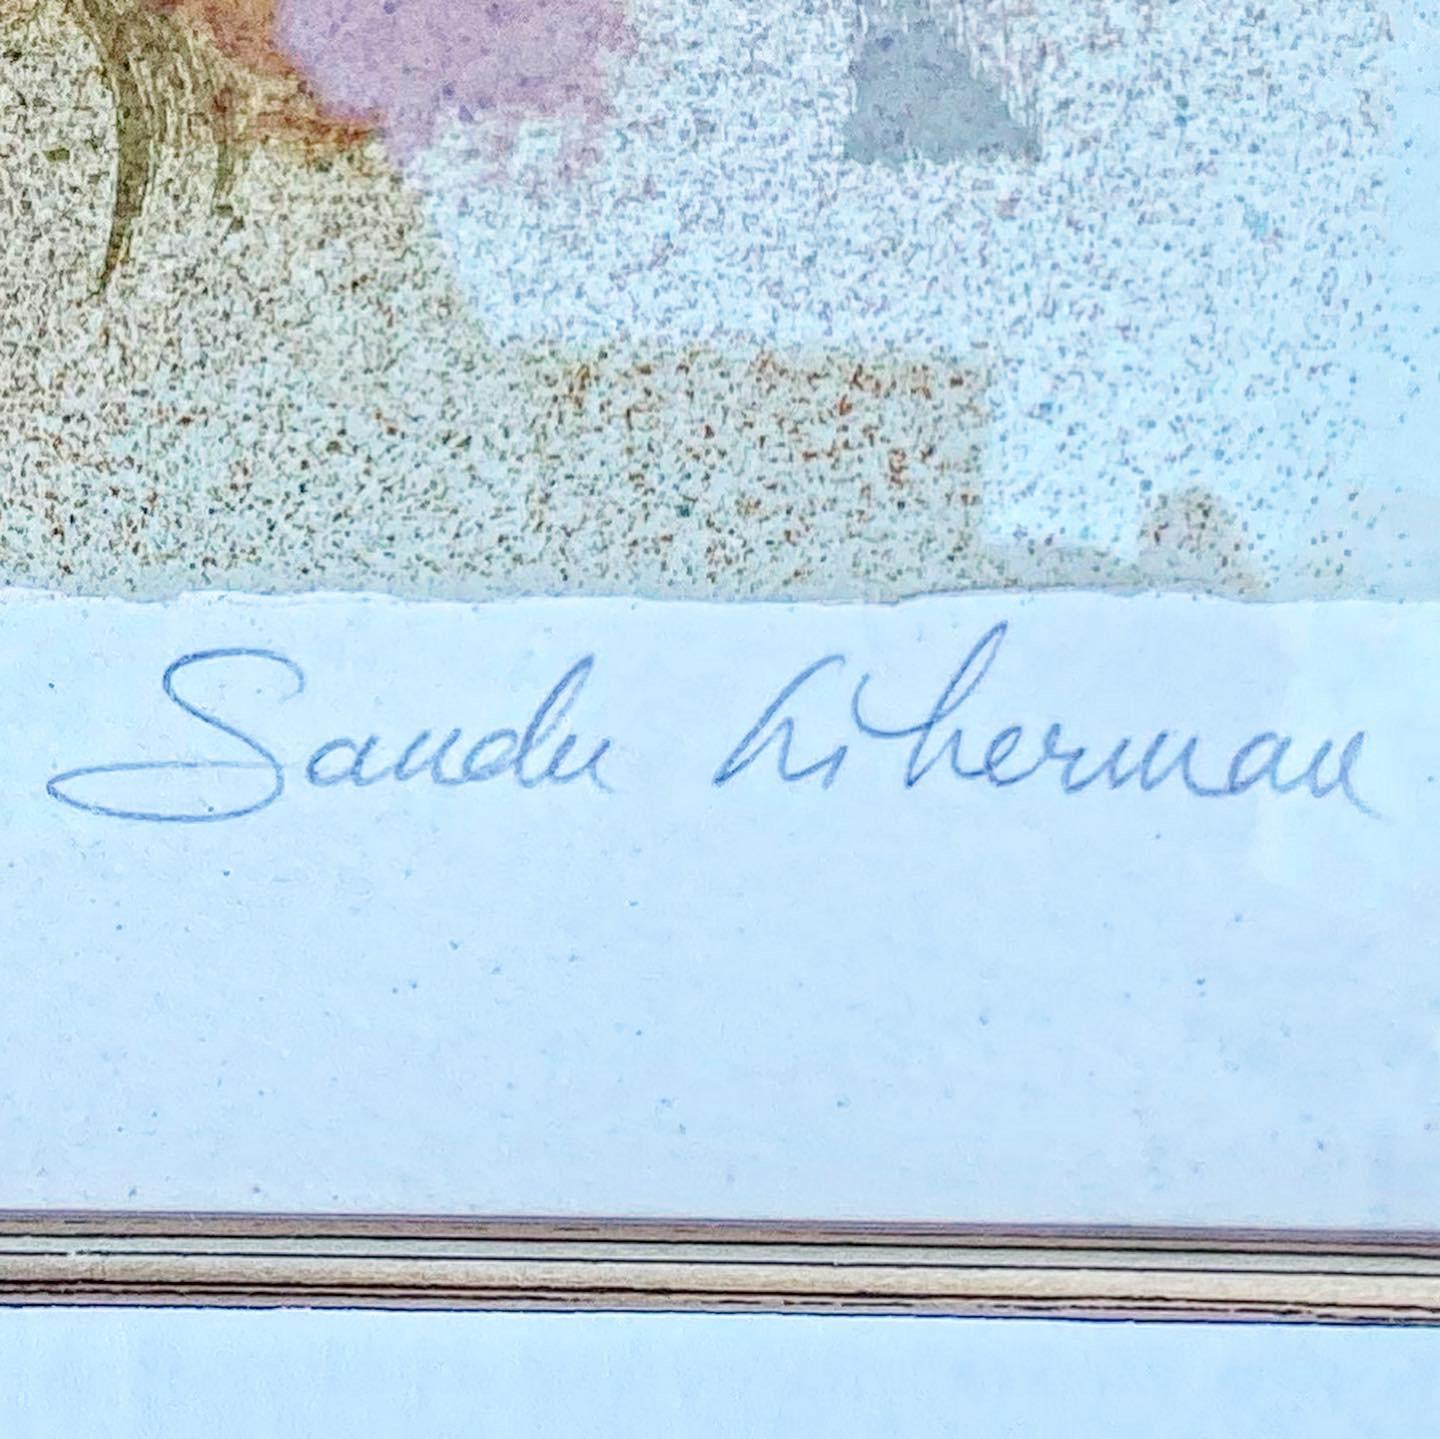 Schöne signierte und nummerierte Lithographie von Sandu Liberman, die zwei Liebende darstellt, die sich umarmen.

Sandu Liberman war ein in Rumänien geborener israelischer Maler, der für seine Darstellungen von Tänzern, Stadtleben und Akten bekannt